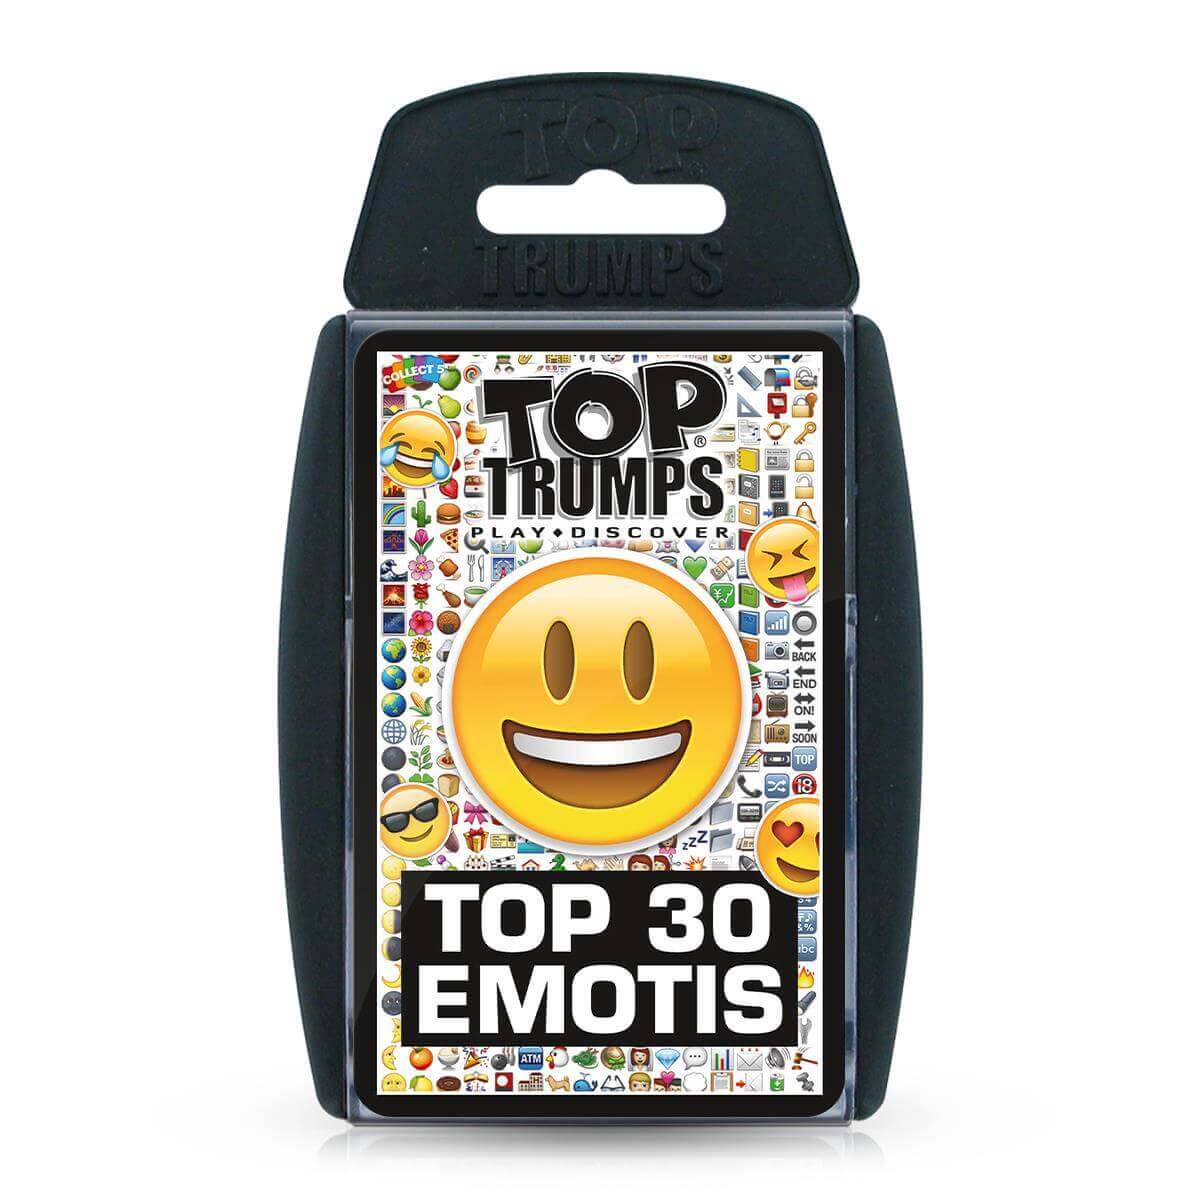 Top 30 Emotis Top Trumps Card Game